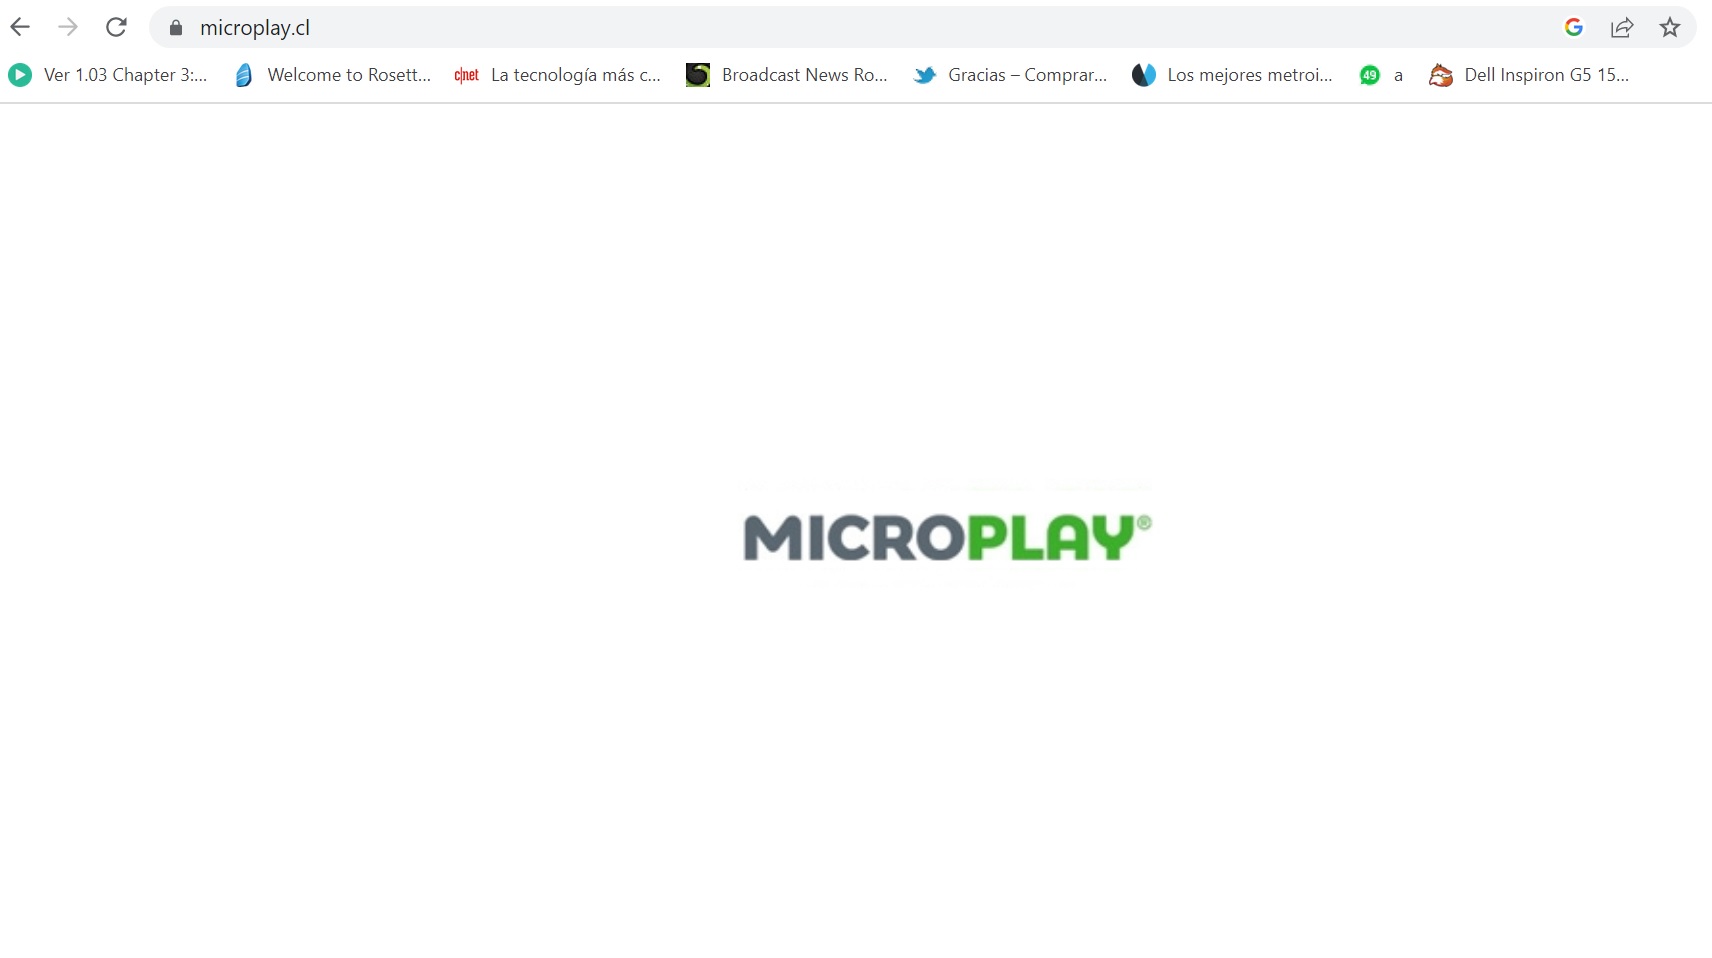 captura de pantalla sitio microplay